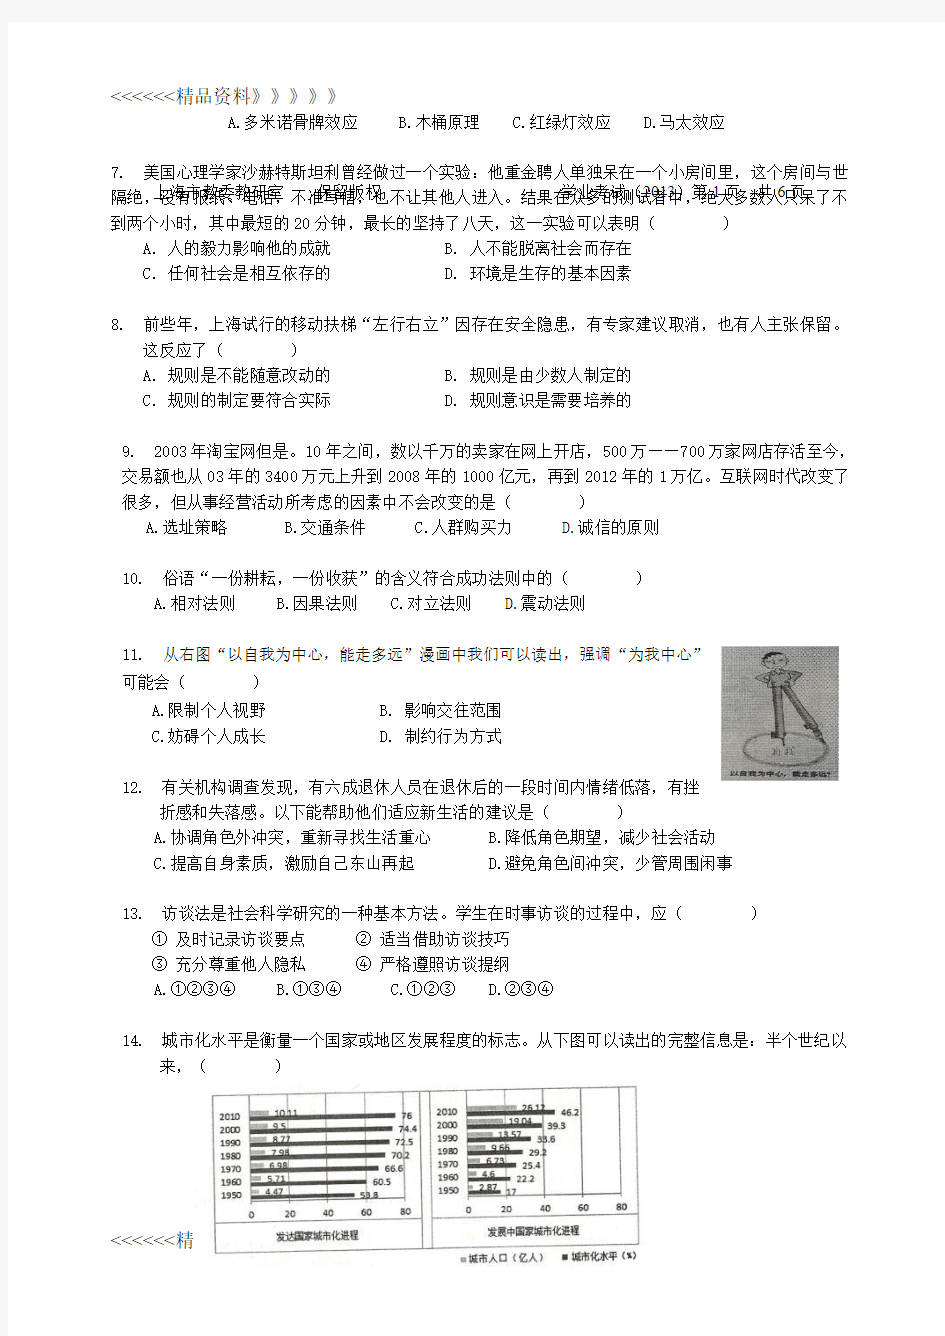 上海市初中毕业生统一学业考试社会学科试卷及答案复习课程